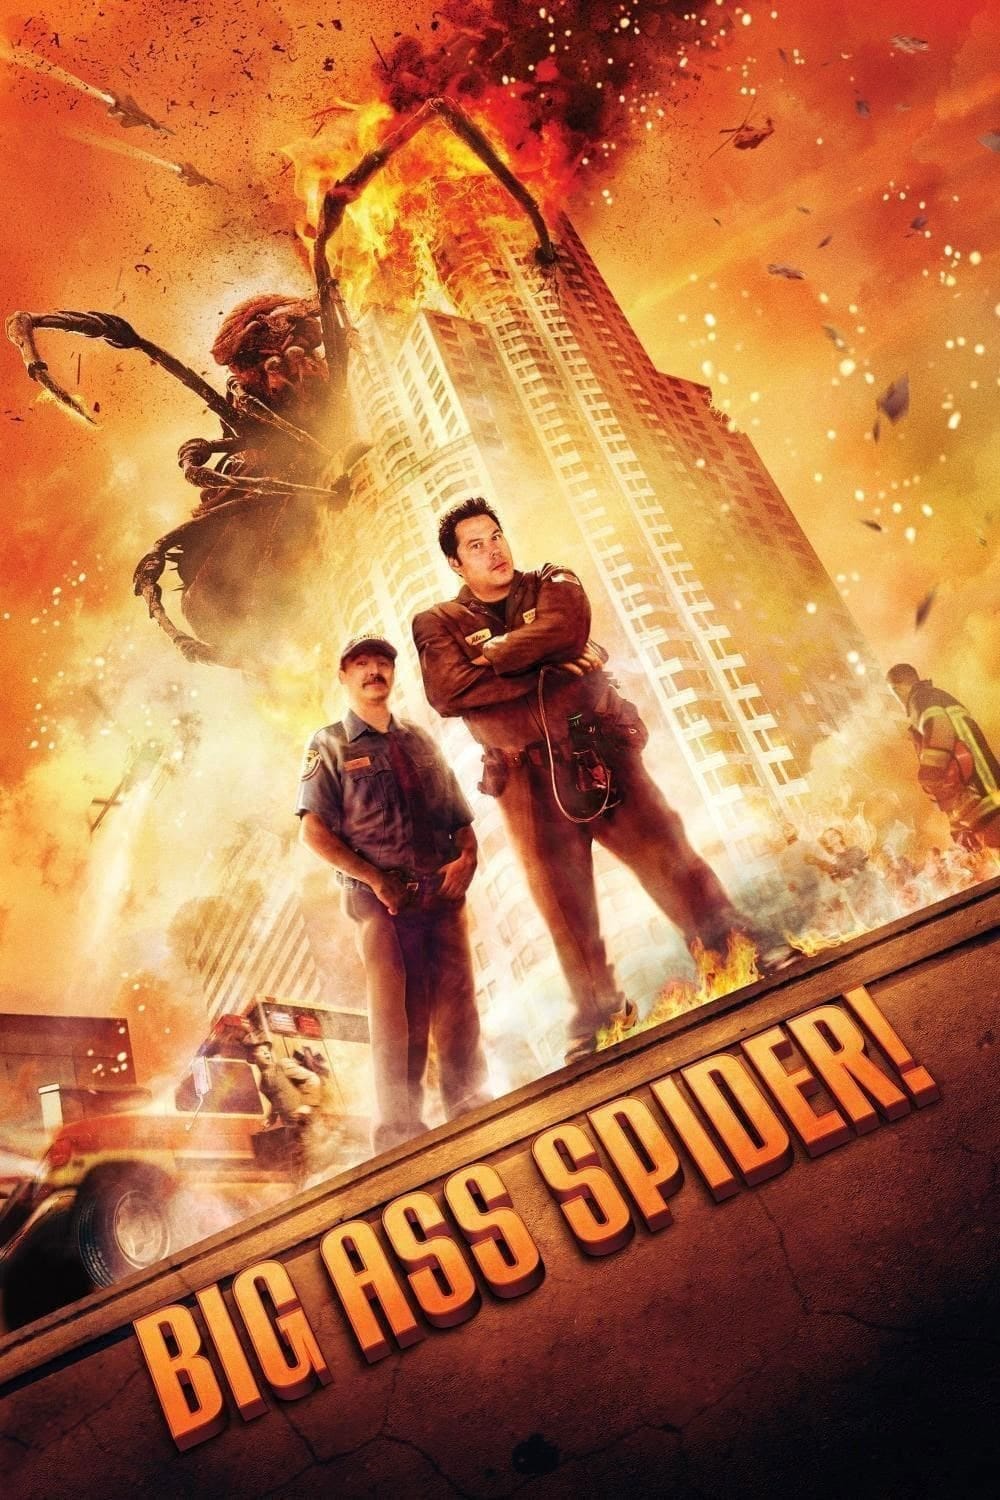 Big Ass Spider! (2013) | Poster